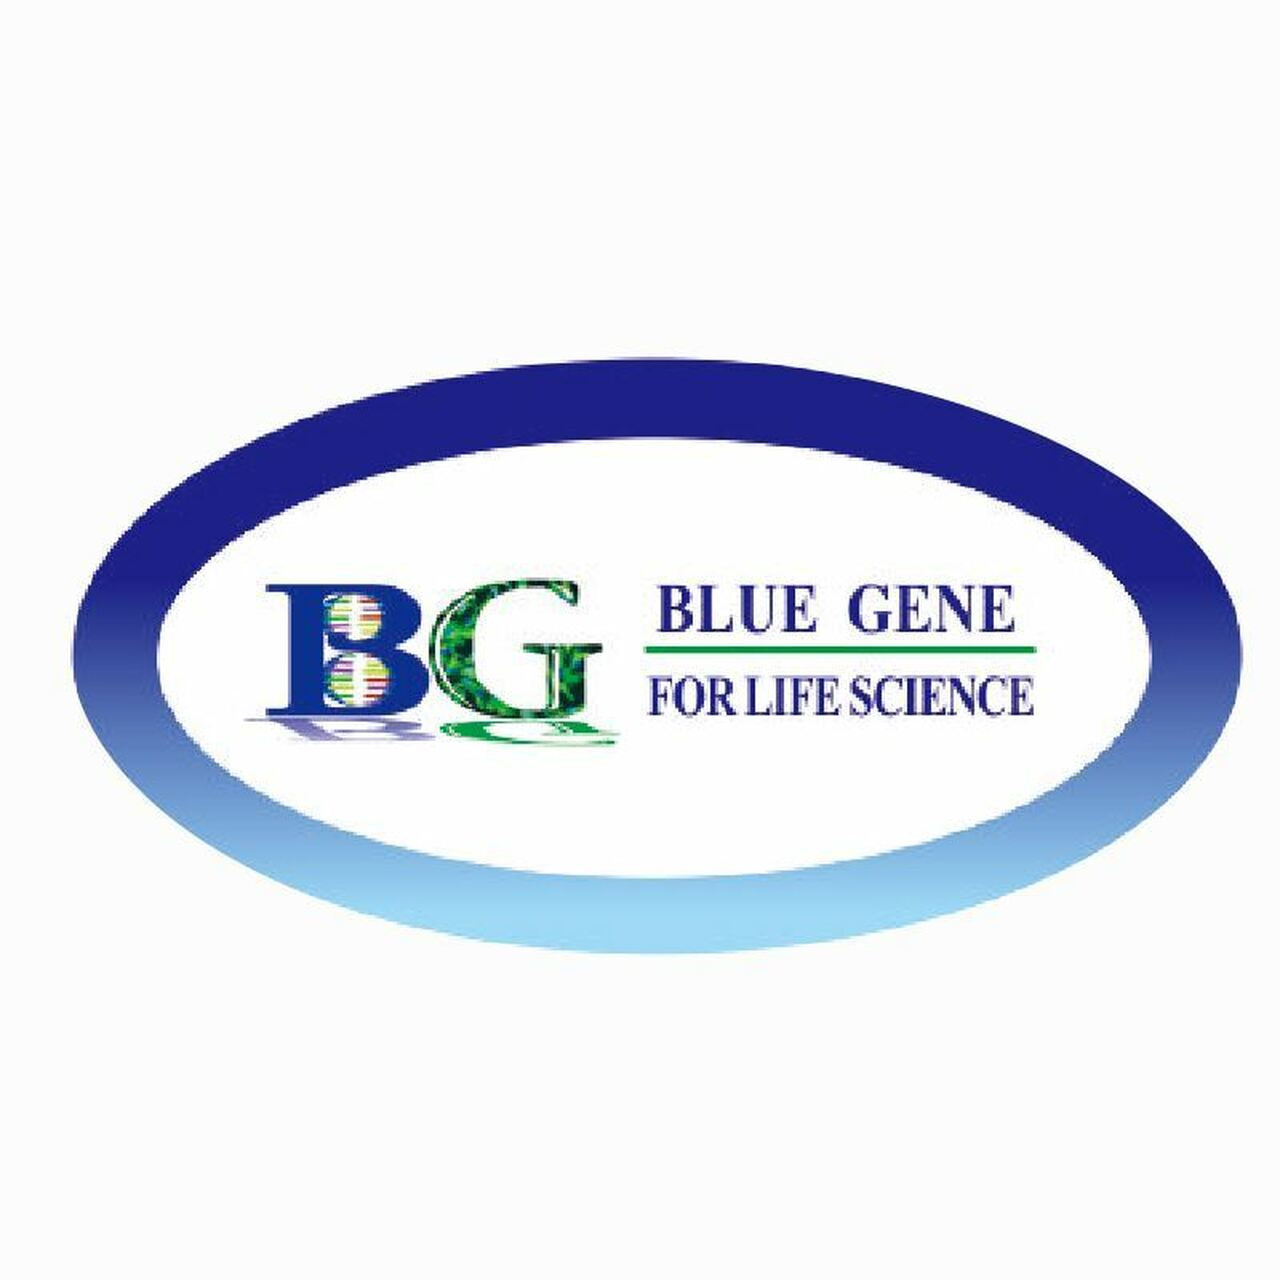 bluegene-protein-kinases-g